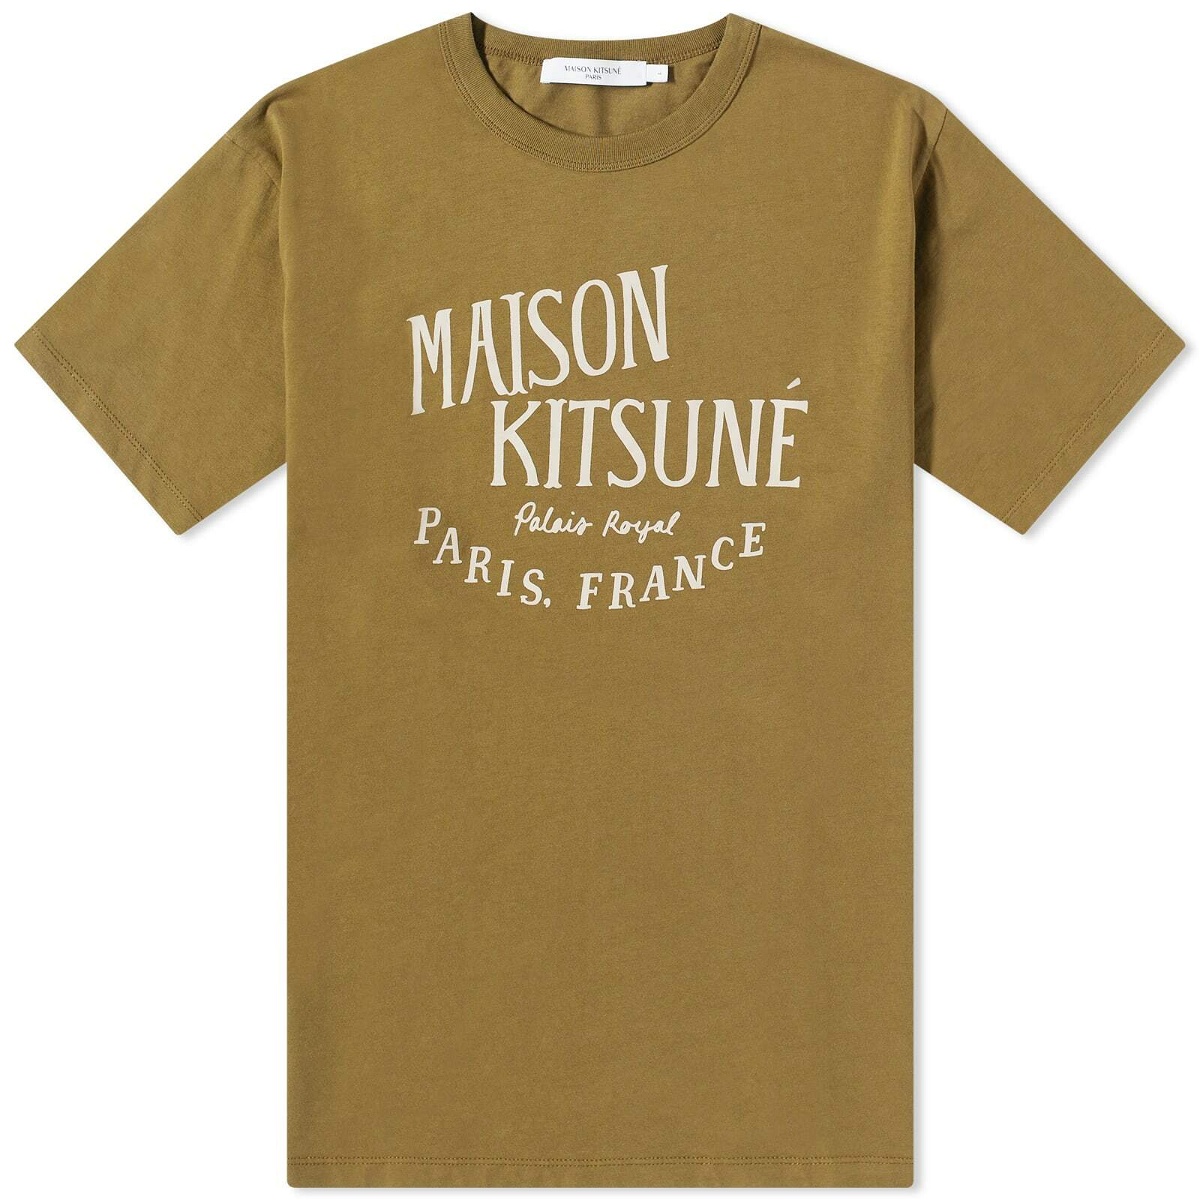 Maison Kitsuné Men's Palais Royal Classic T-Shirt in Khaki Maison Kitsune